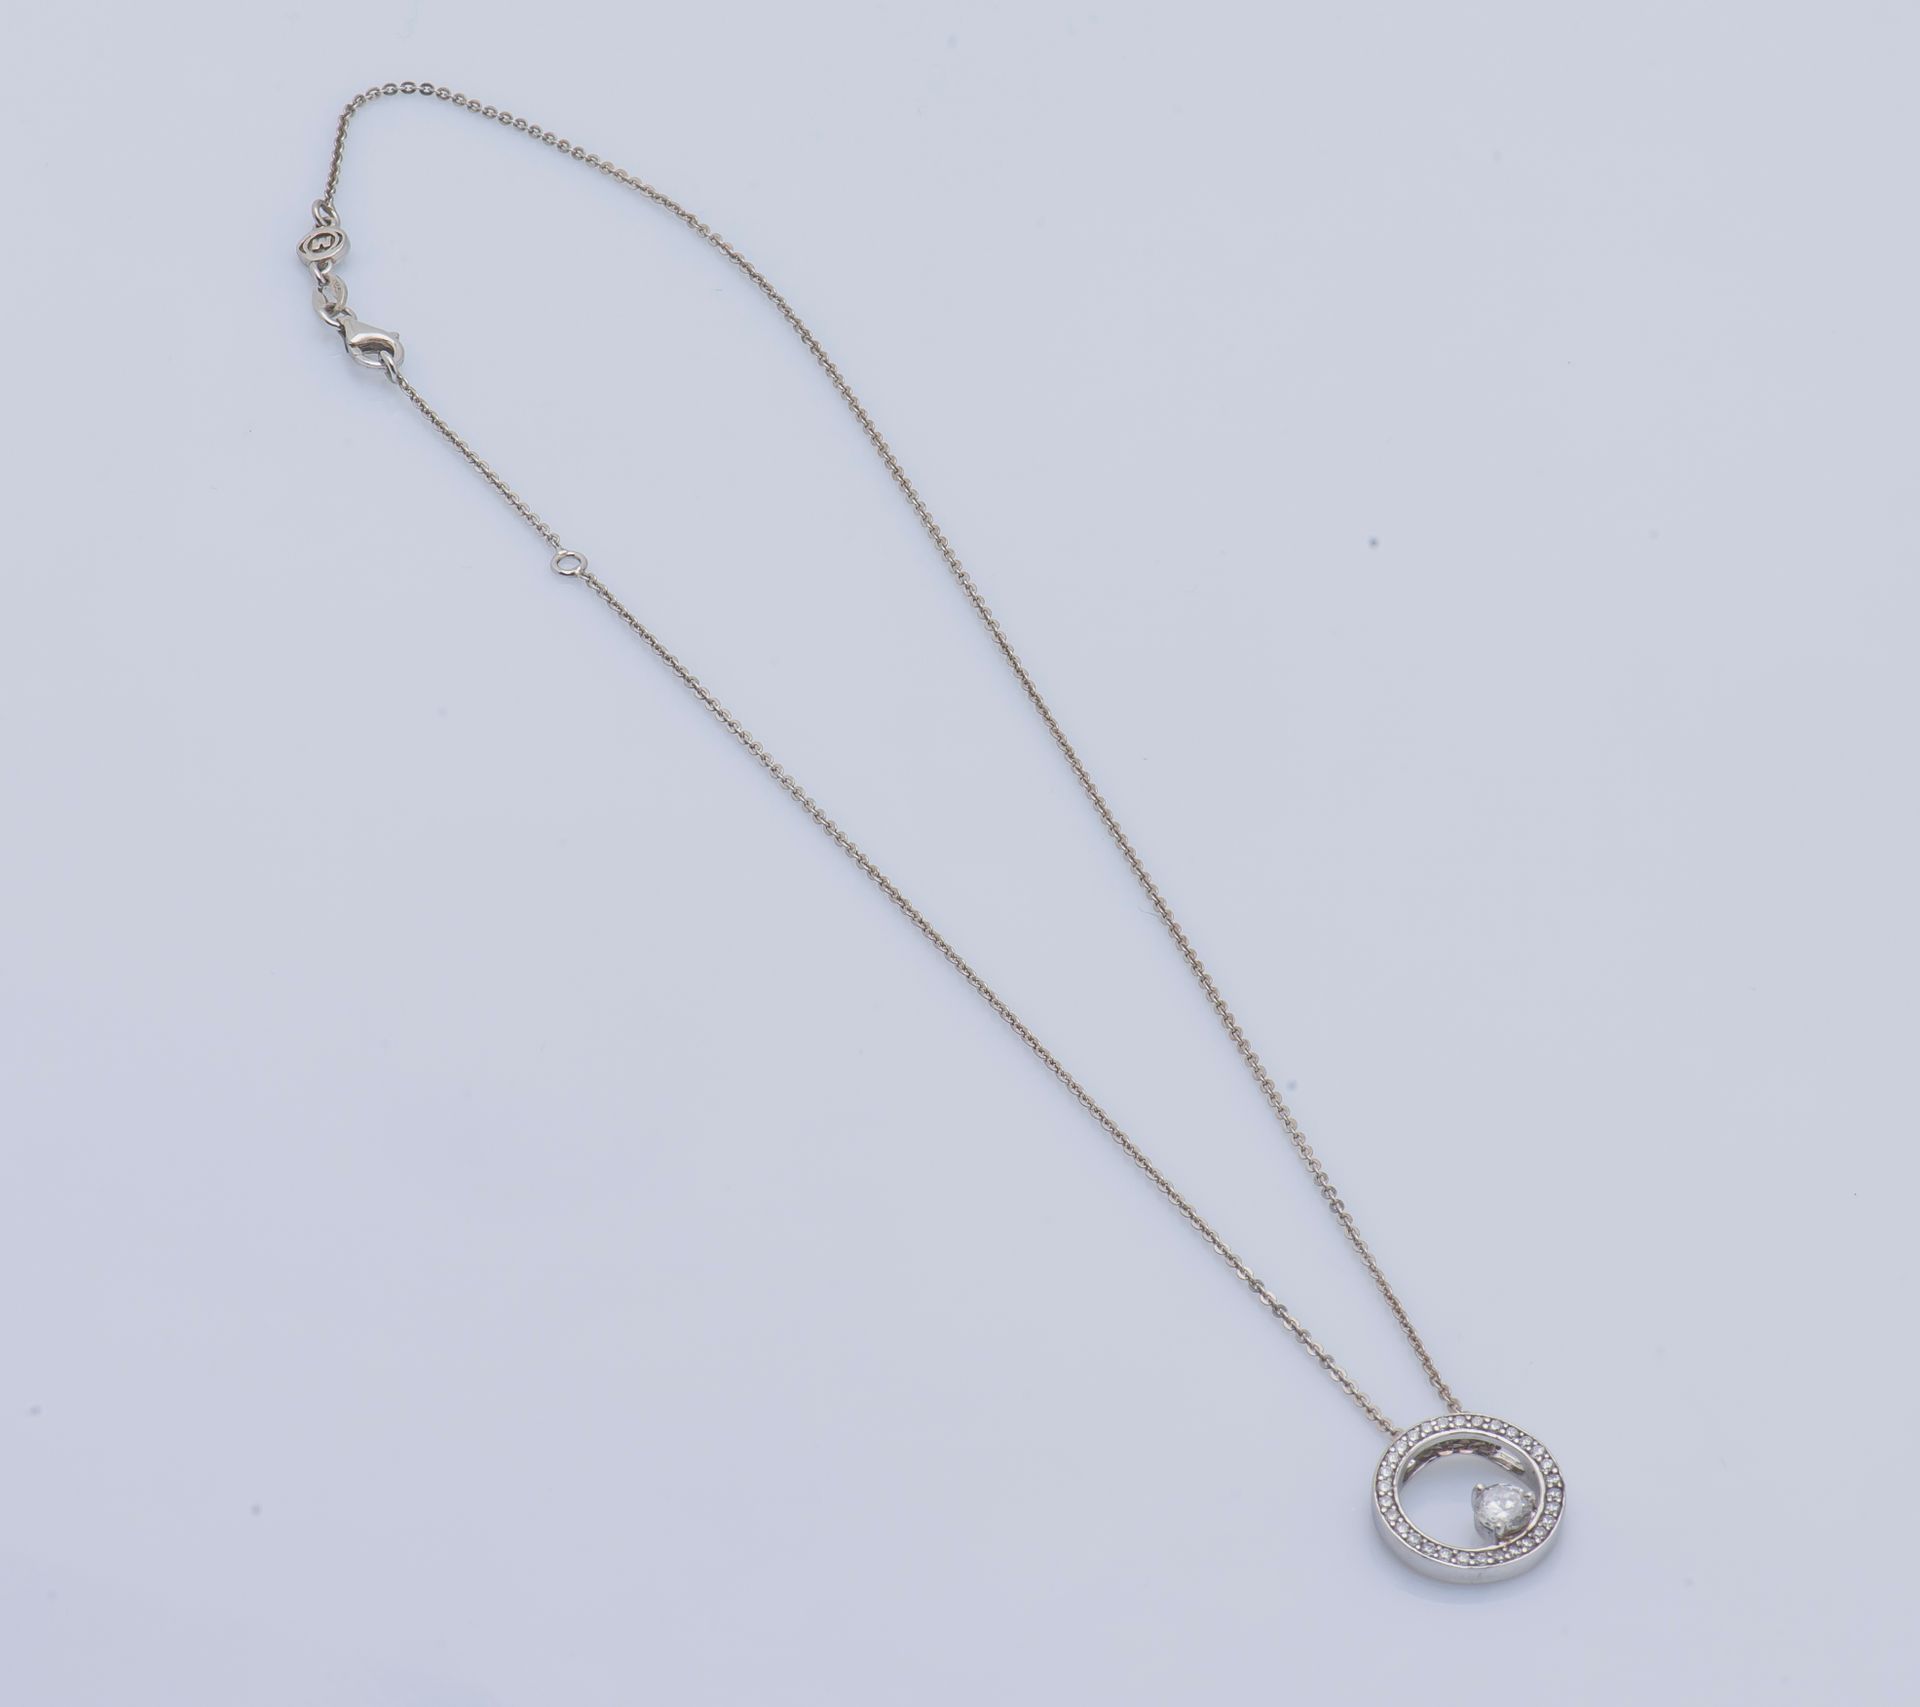 Null 银质项链（925 ‰）由一条链子和一个镶有白色宝石的圆形吊坠组成，其中一颗较大。

项链尺寸：20厘米 毛重：5克